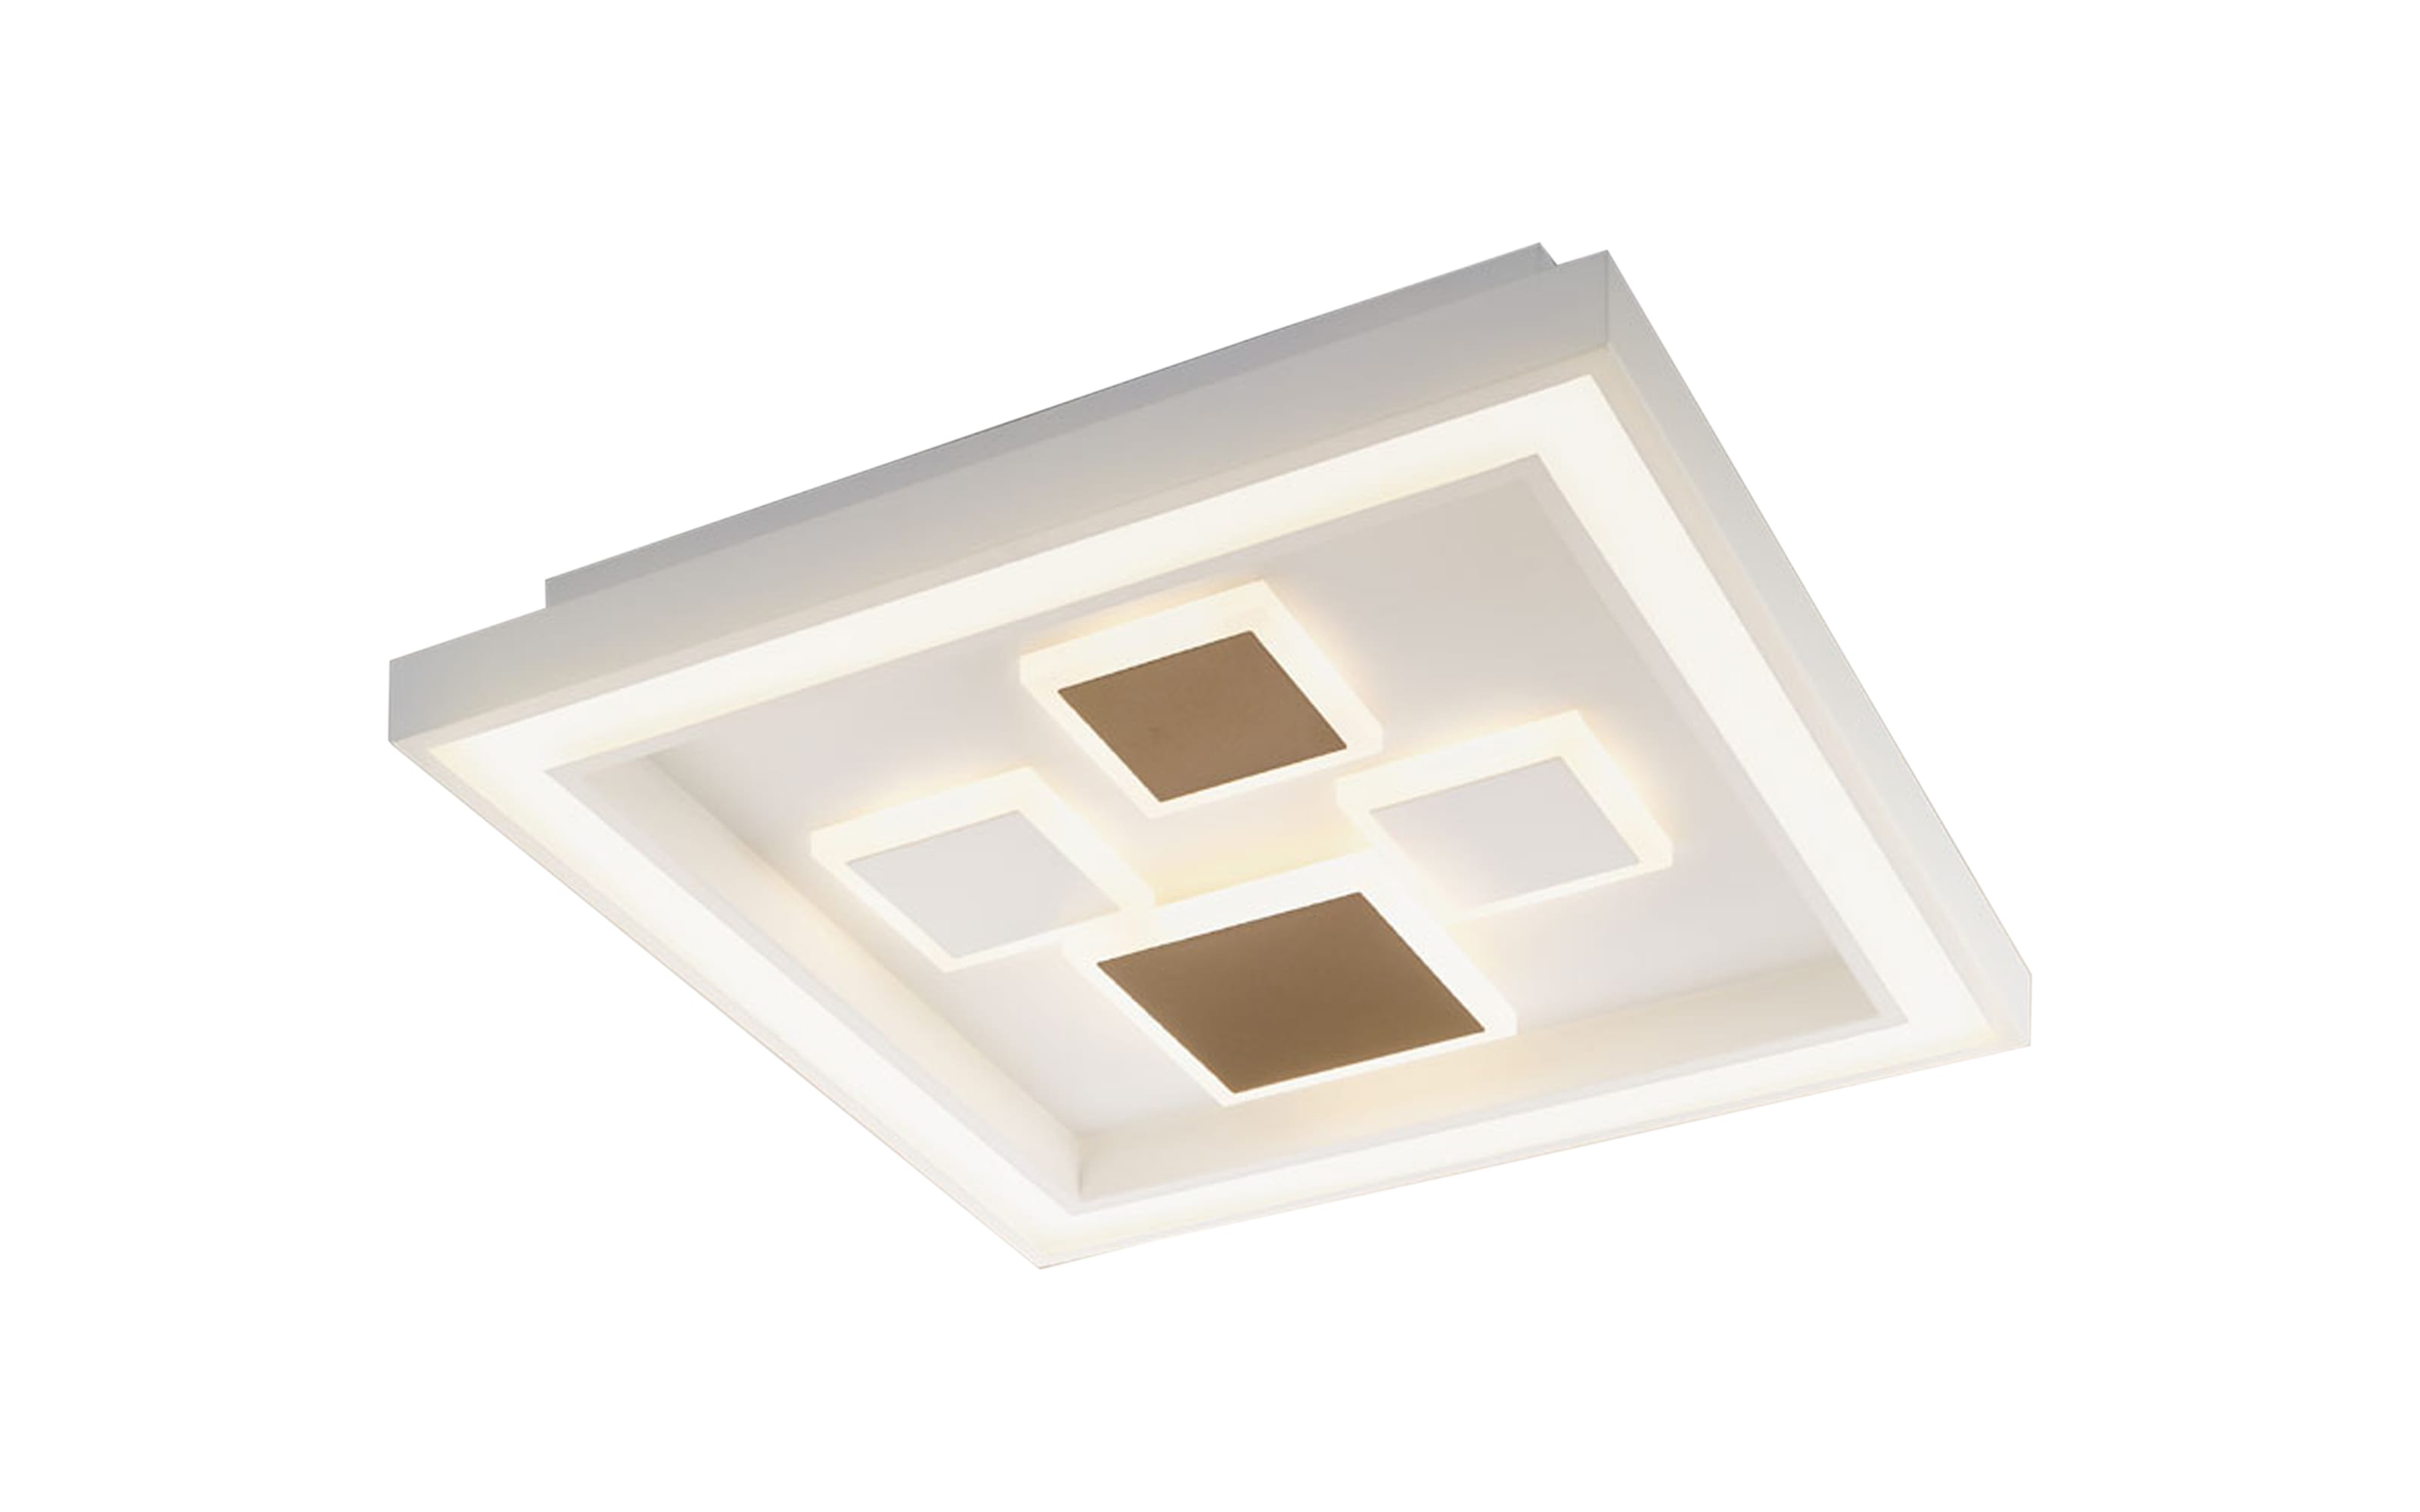 LED-Deckenleuchte Stina in weiß/silberfarbig, 48 x 48 cm